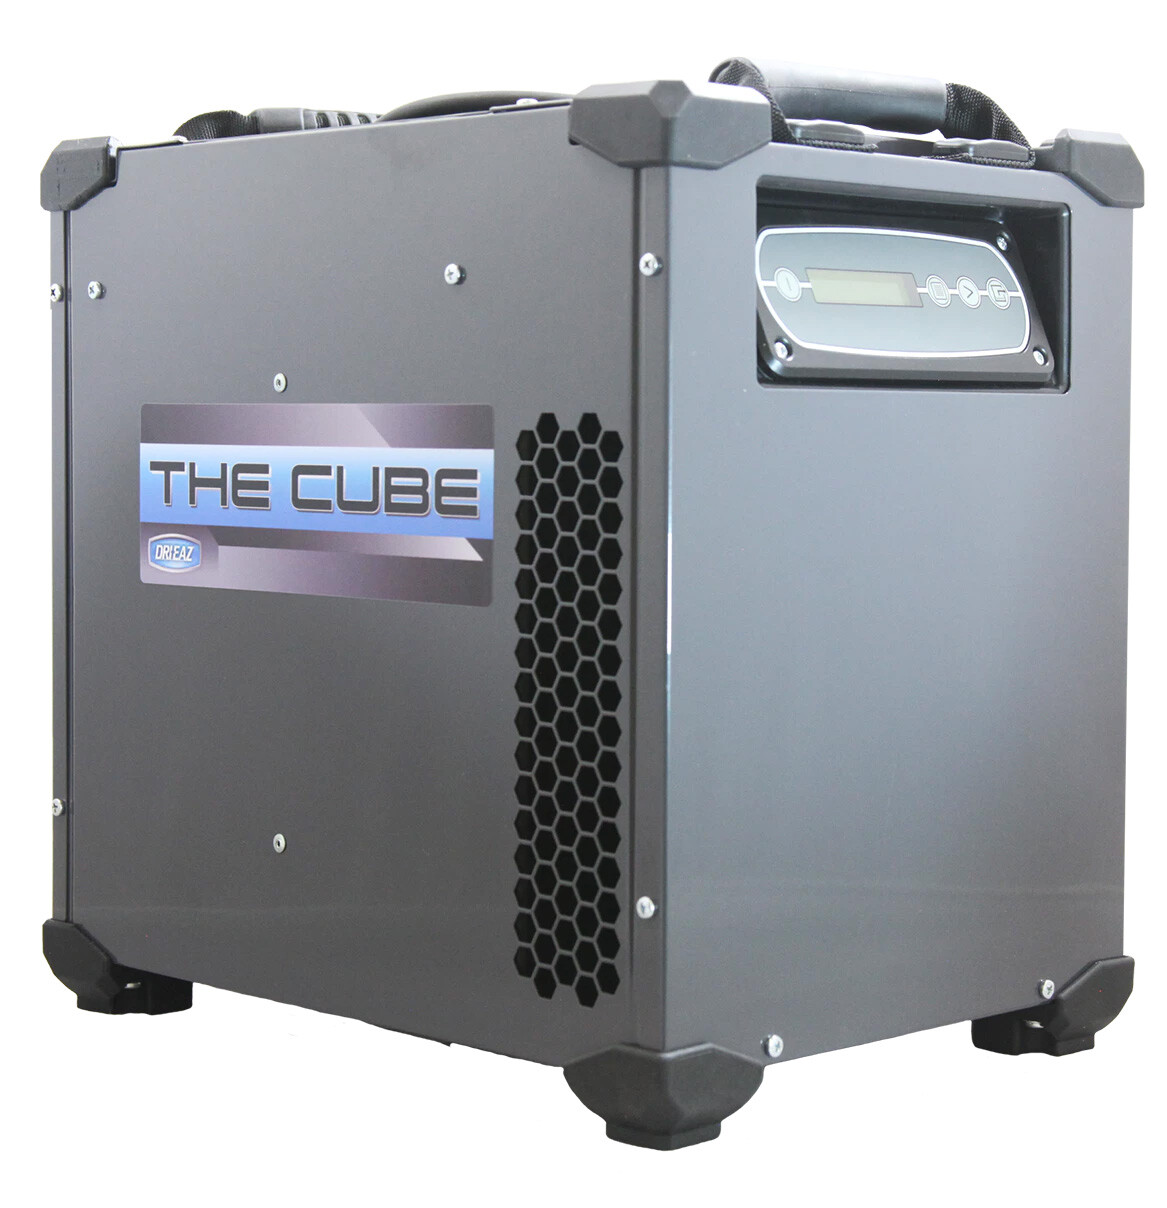 Cube dehumidifier product photo